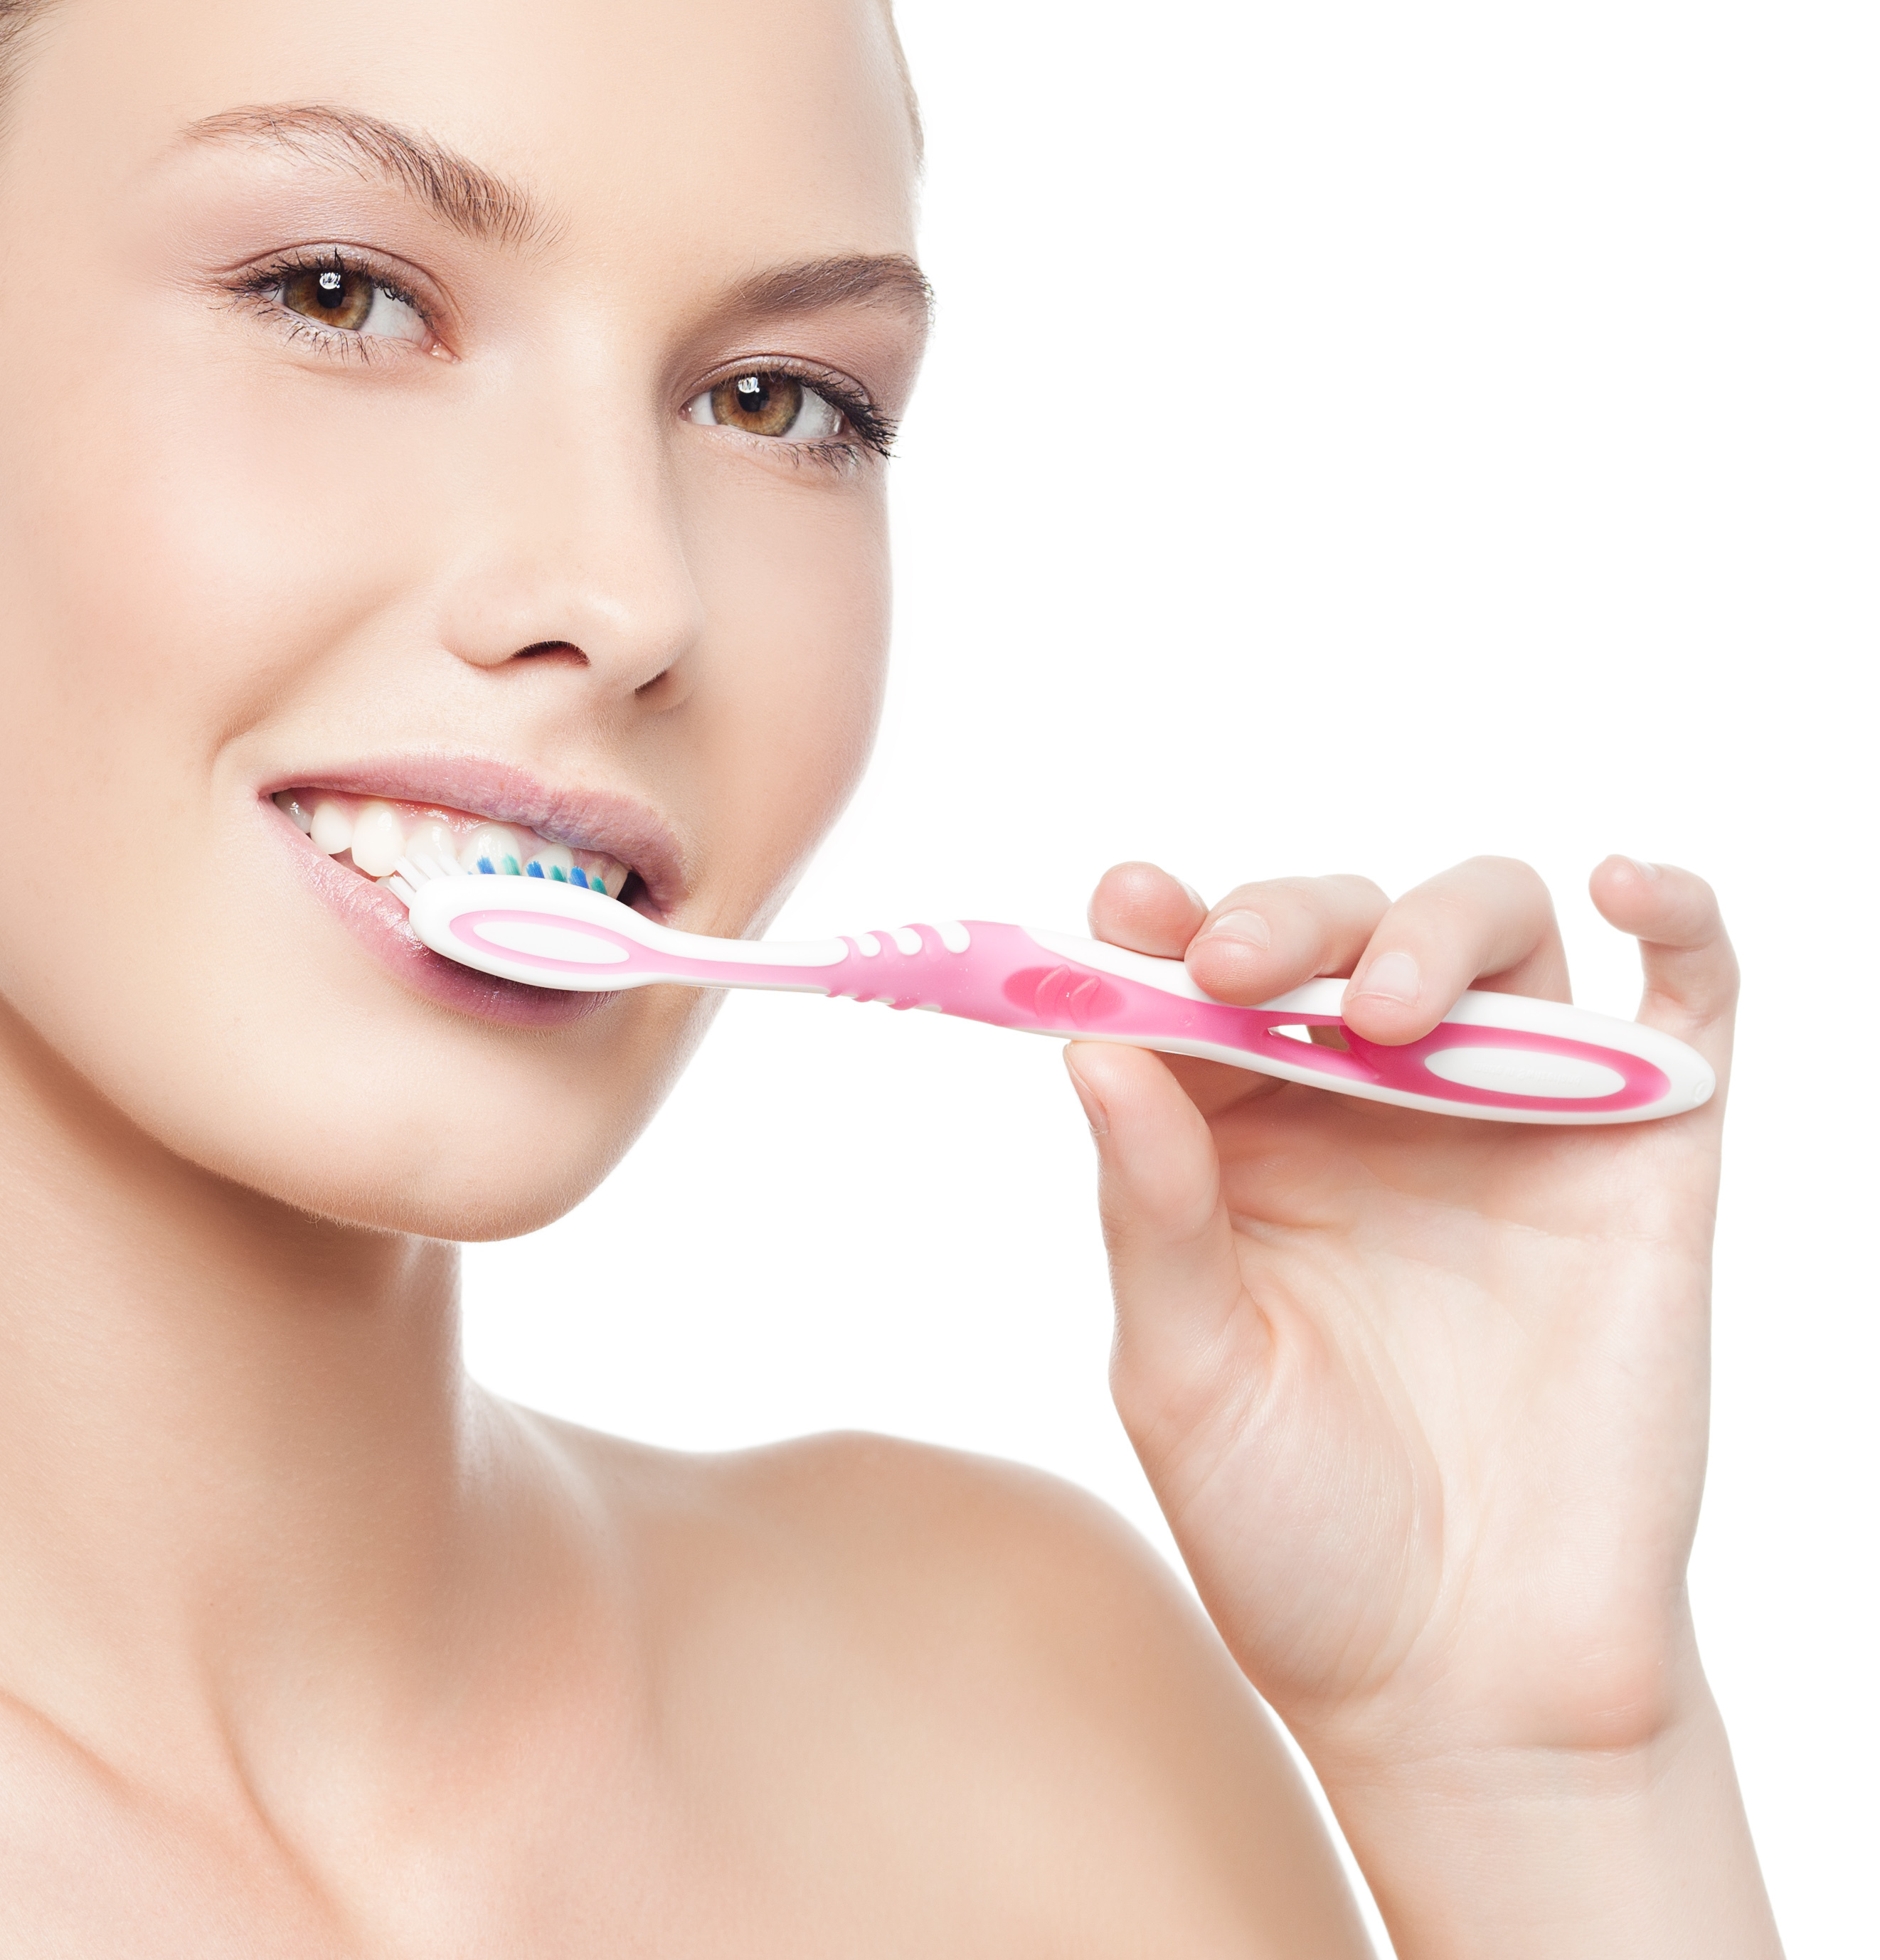 woman-brushing-teeth.jpg